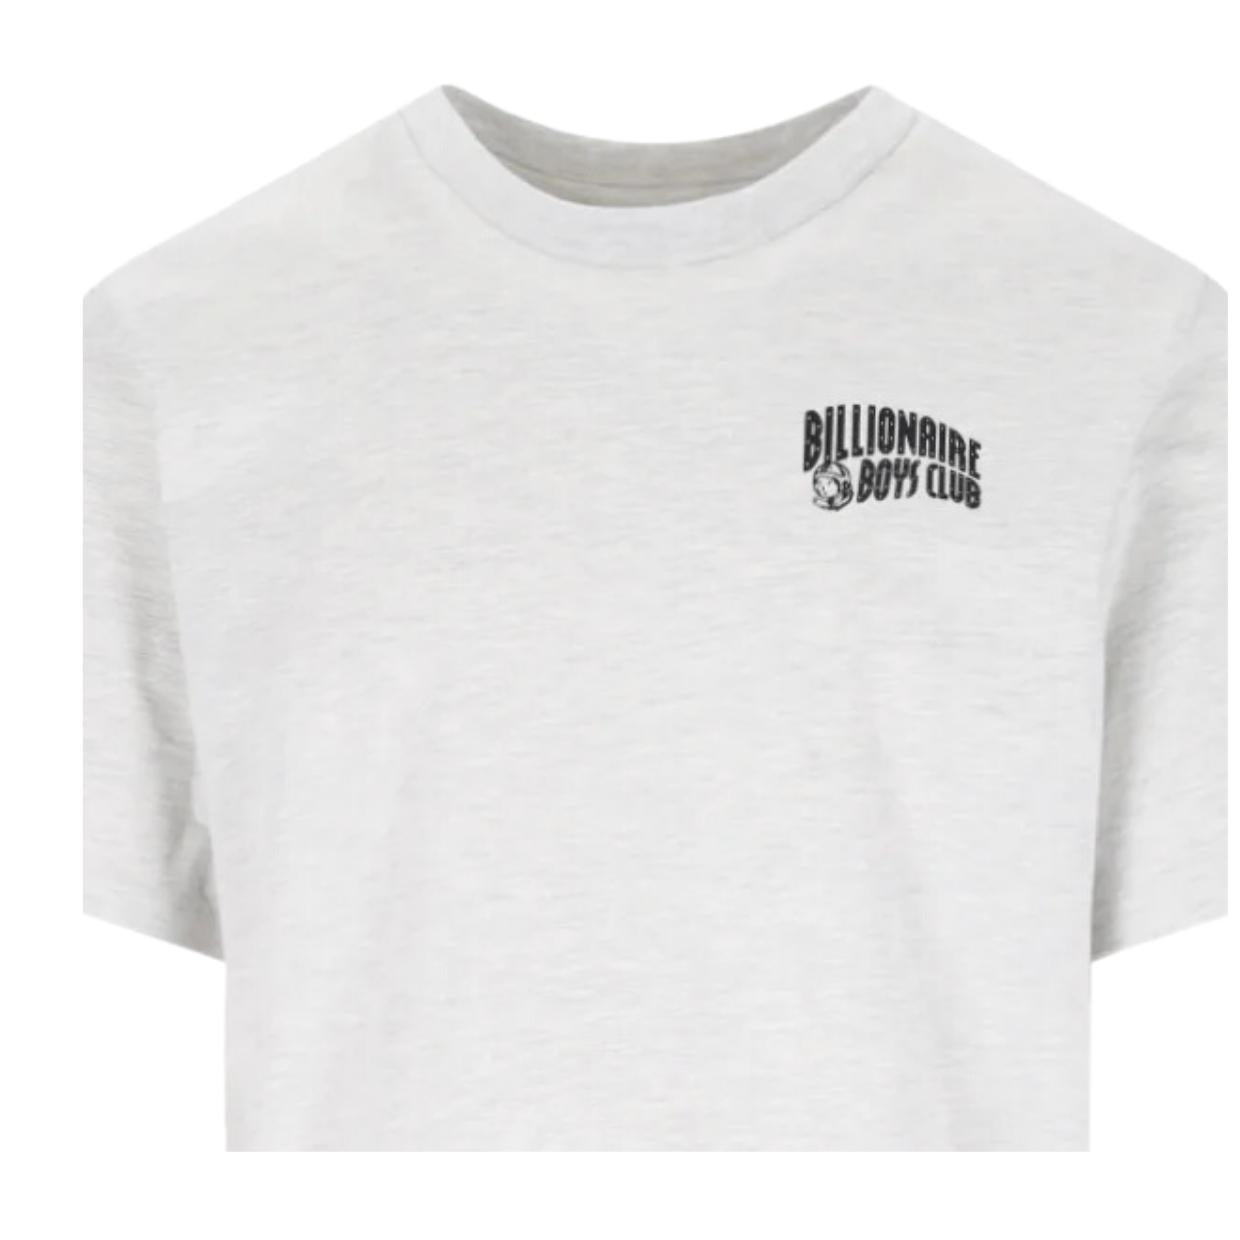 Billionaire Boys Club Small Arch Logo Heather Ash Grey T-Shirt